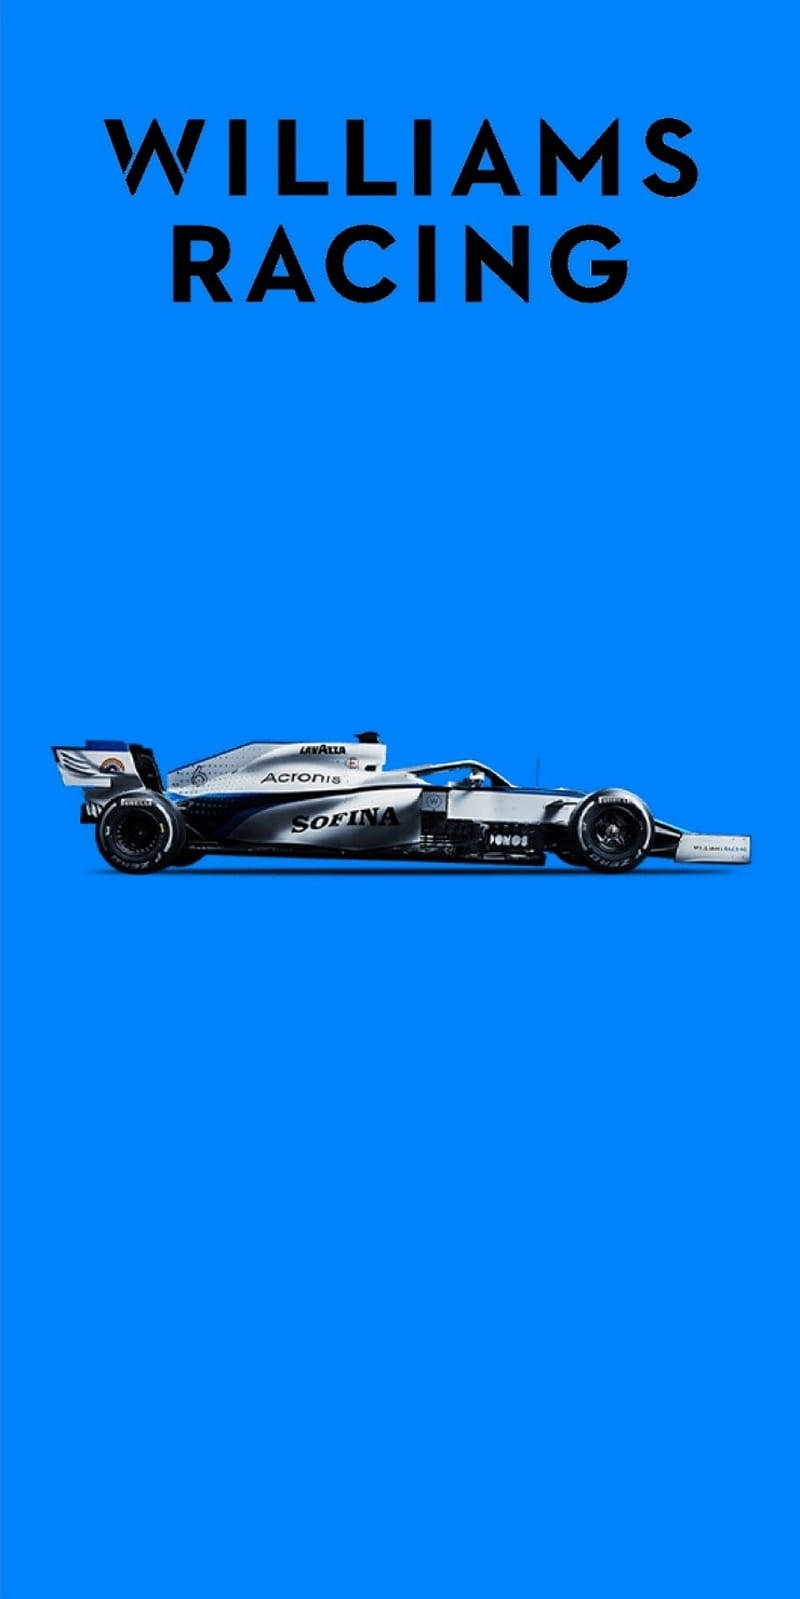 Black Williams Racing Car Wallpaper